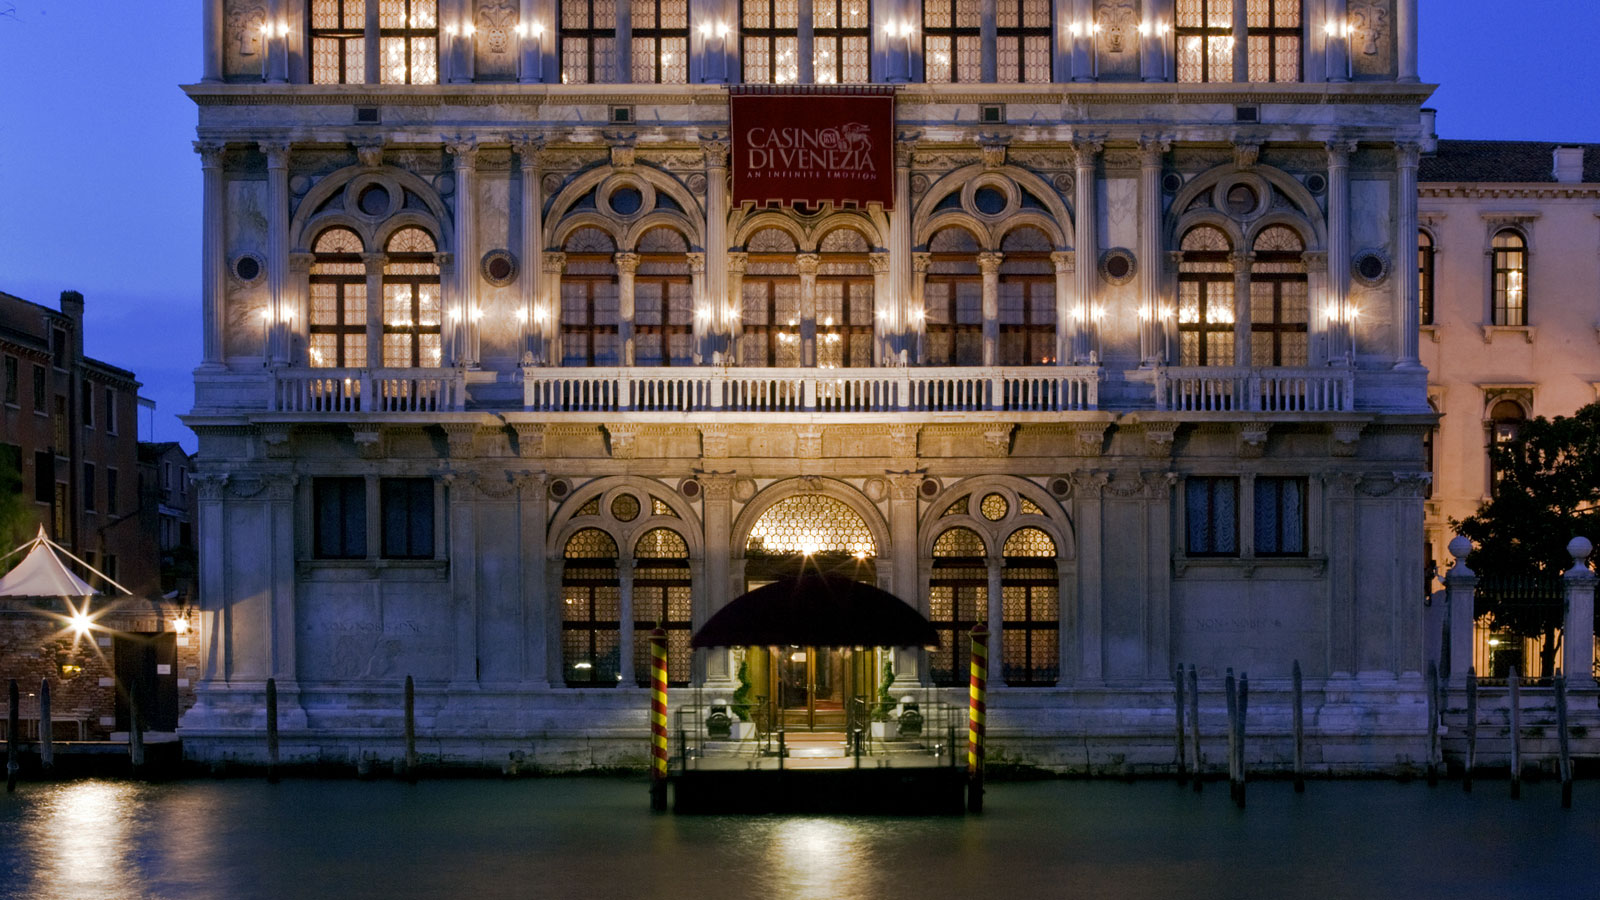 Casinò di Venezia wordt gezien als het oudste casino ter wereld